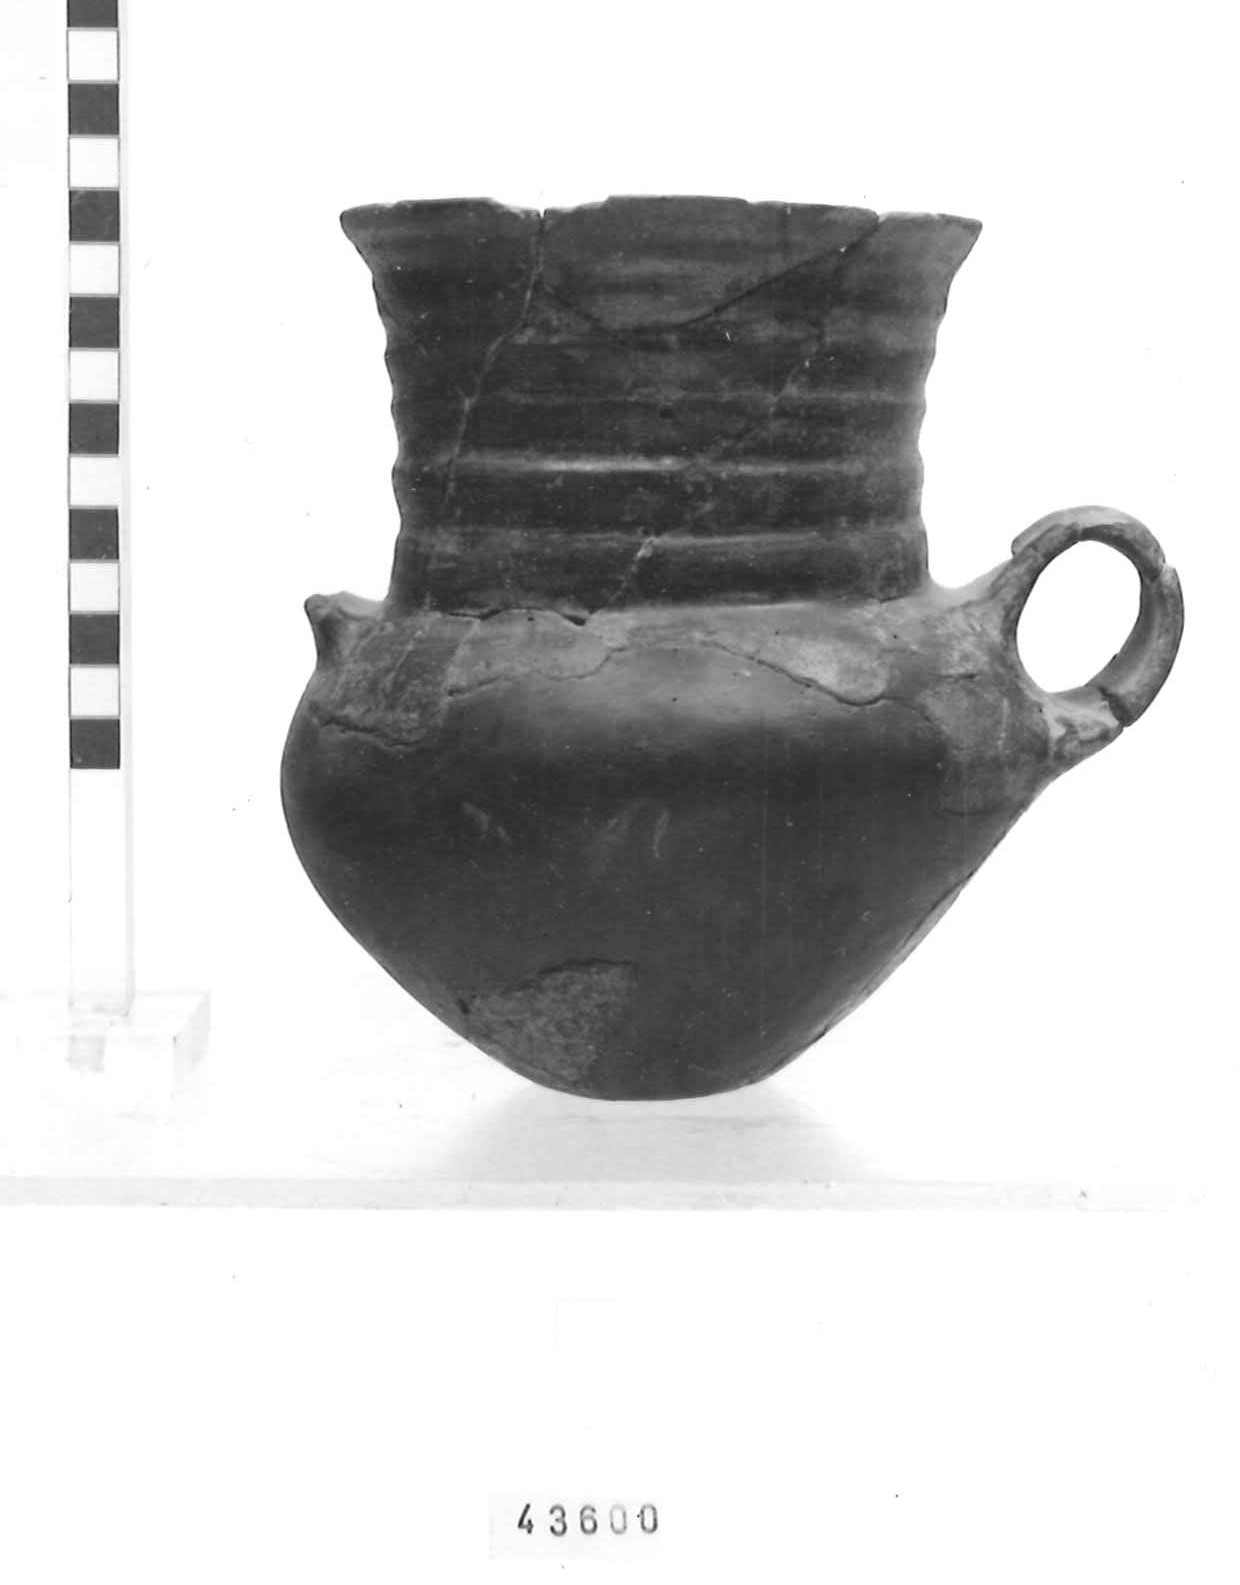 anforetta, tipo "Moie" - Piceno III (secc. VII-VI a.C)